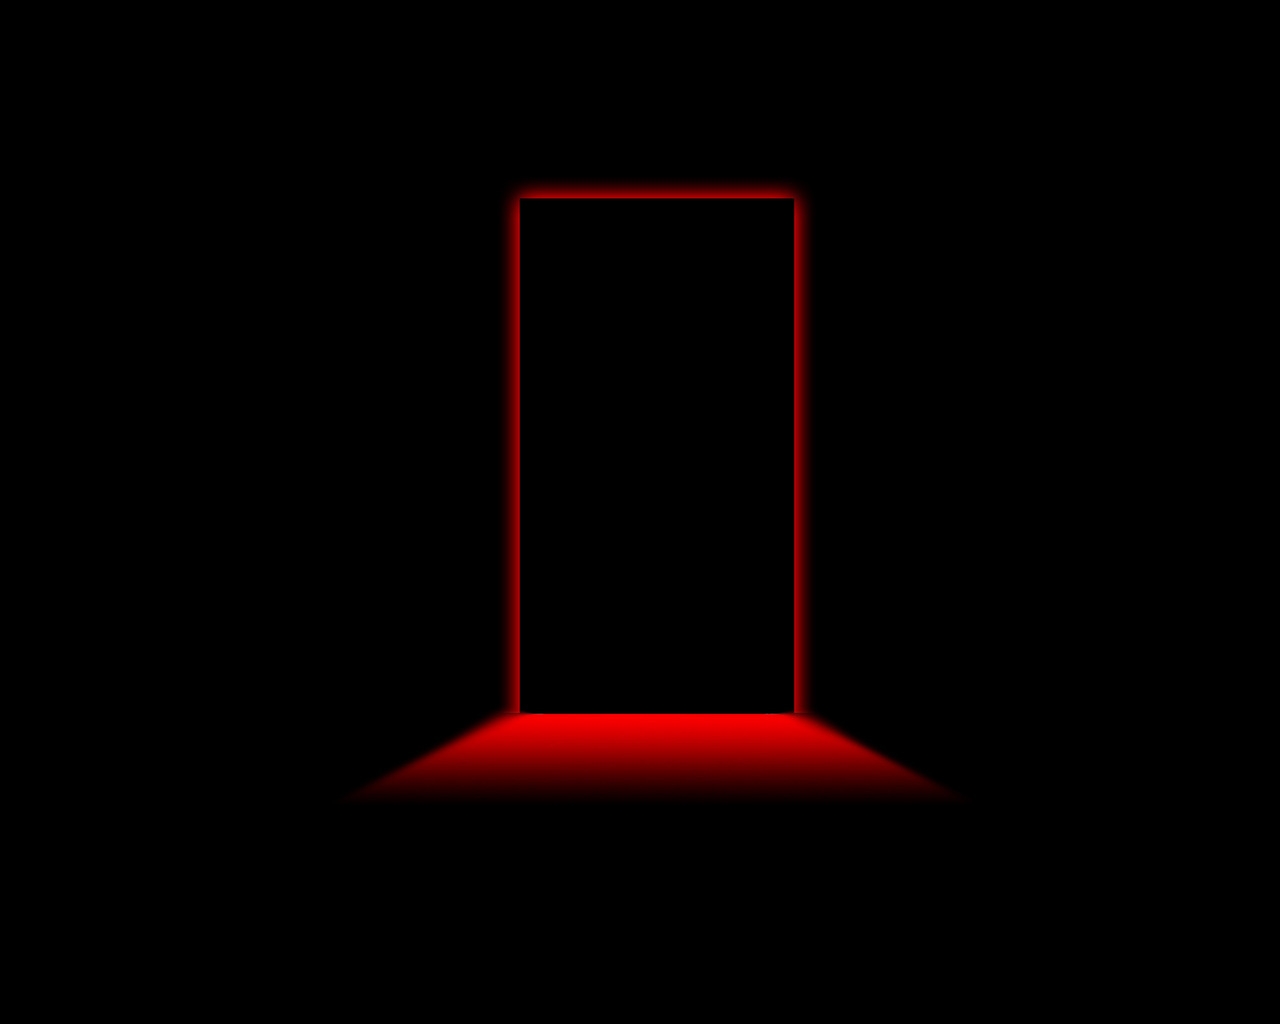 Door Red Light for 1280 x 1024 resolution